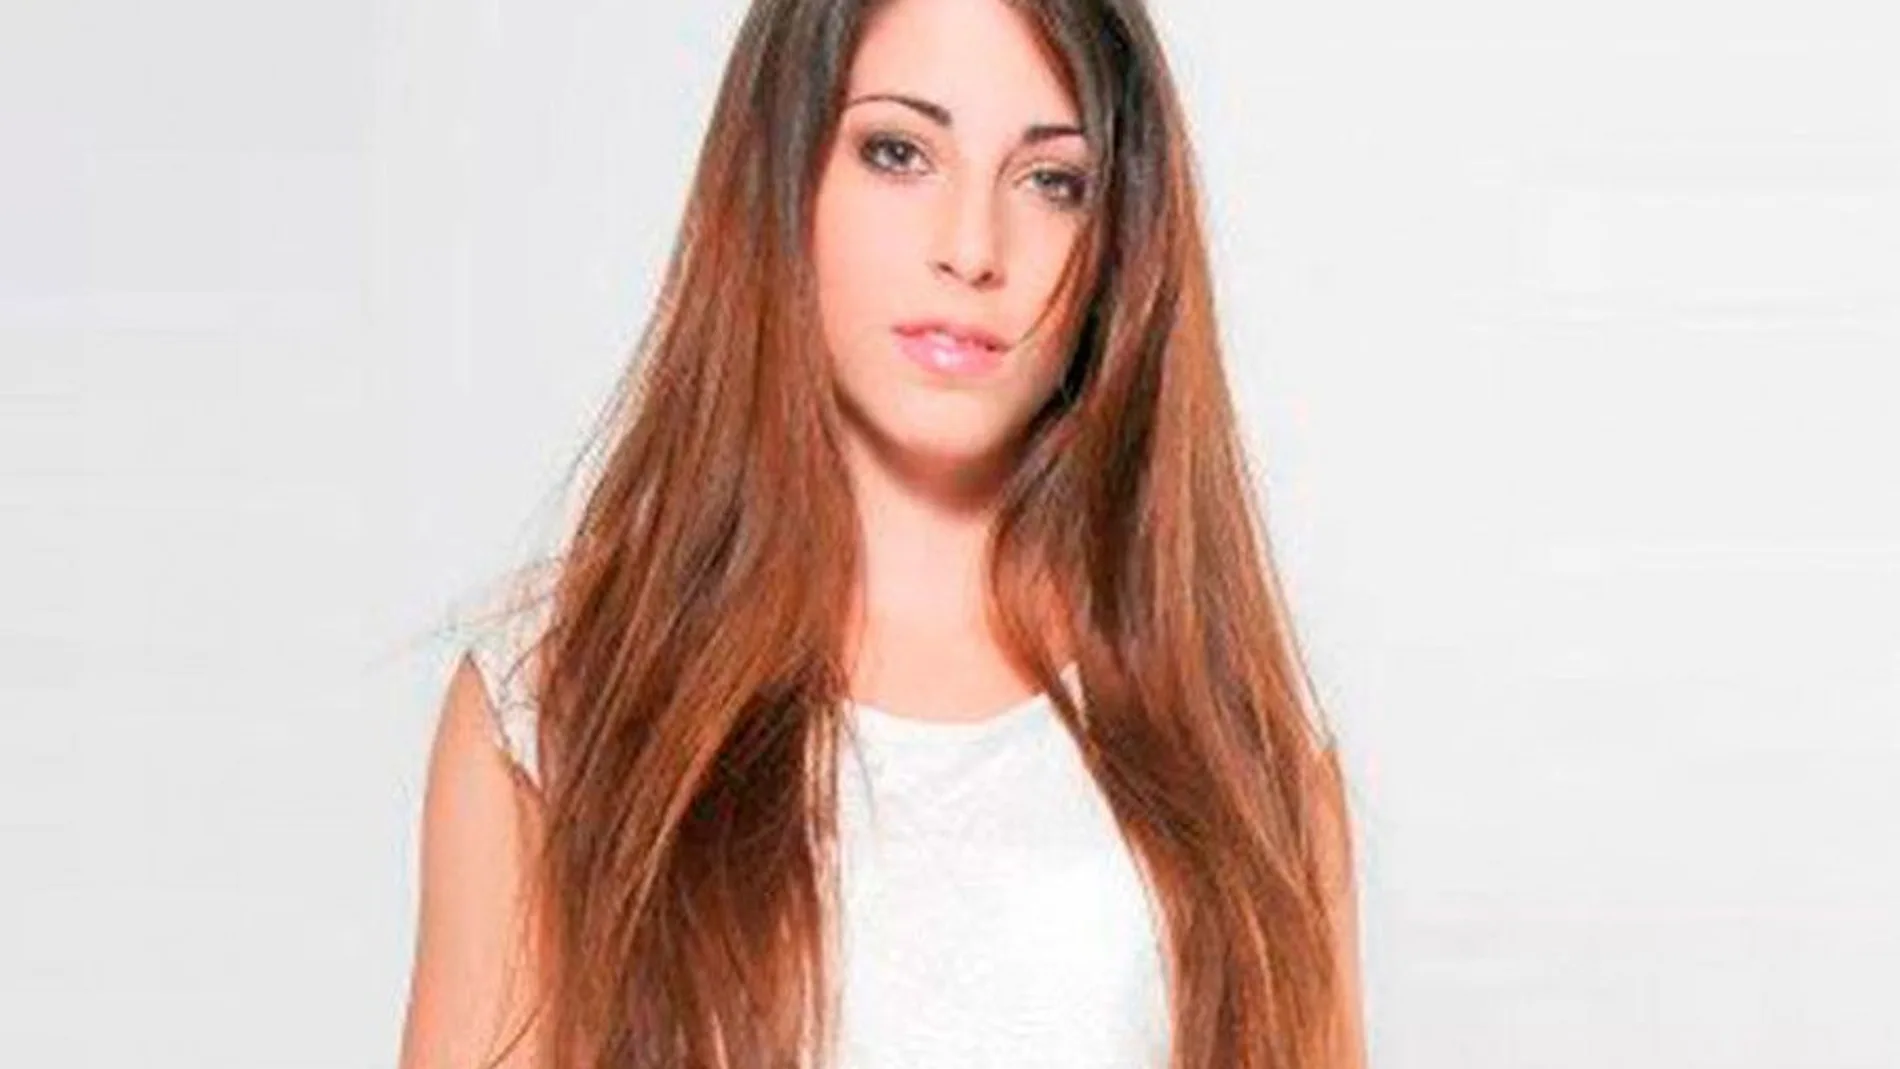 La joven española Cristina Ortiz Lozano, de 28 años, fue hallada muerta